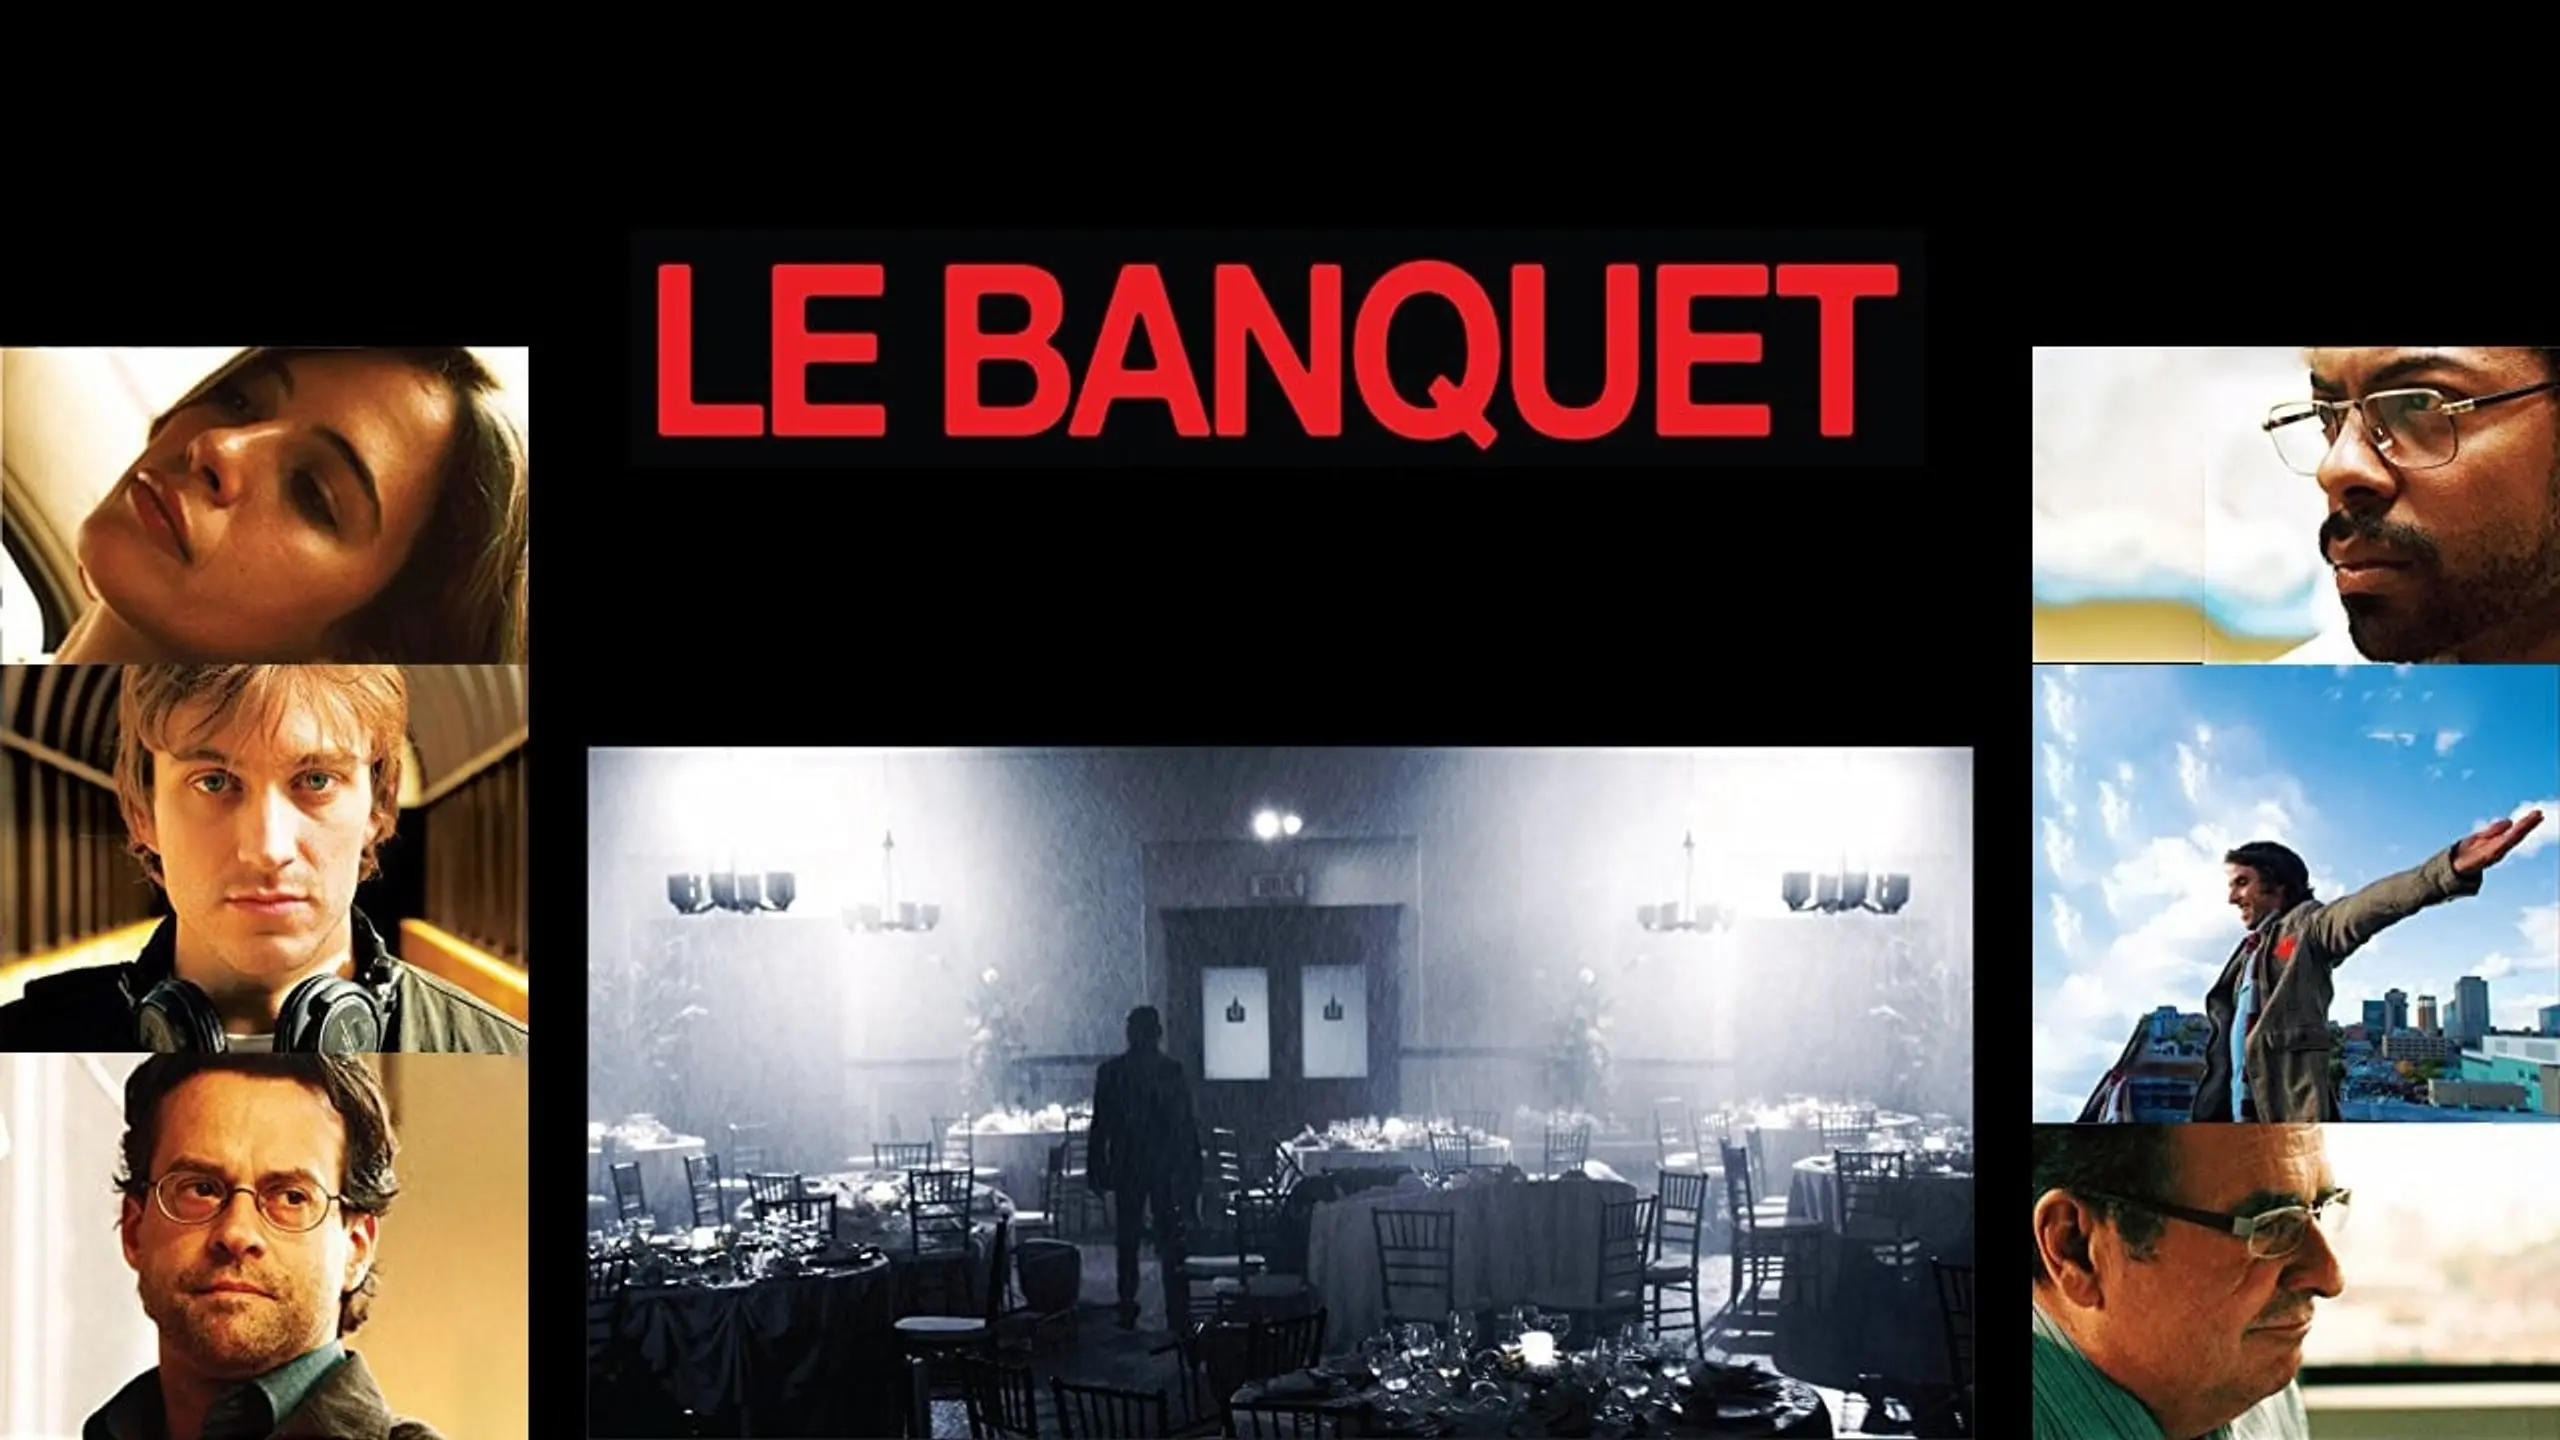 Le banquet